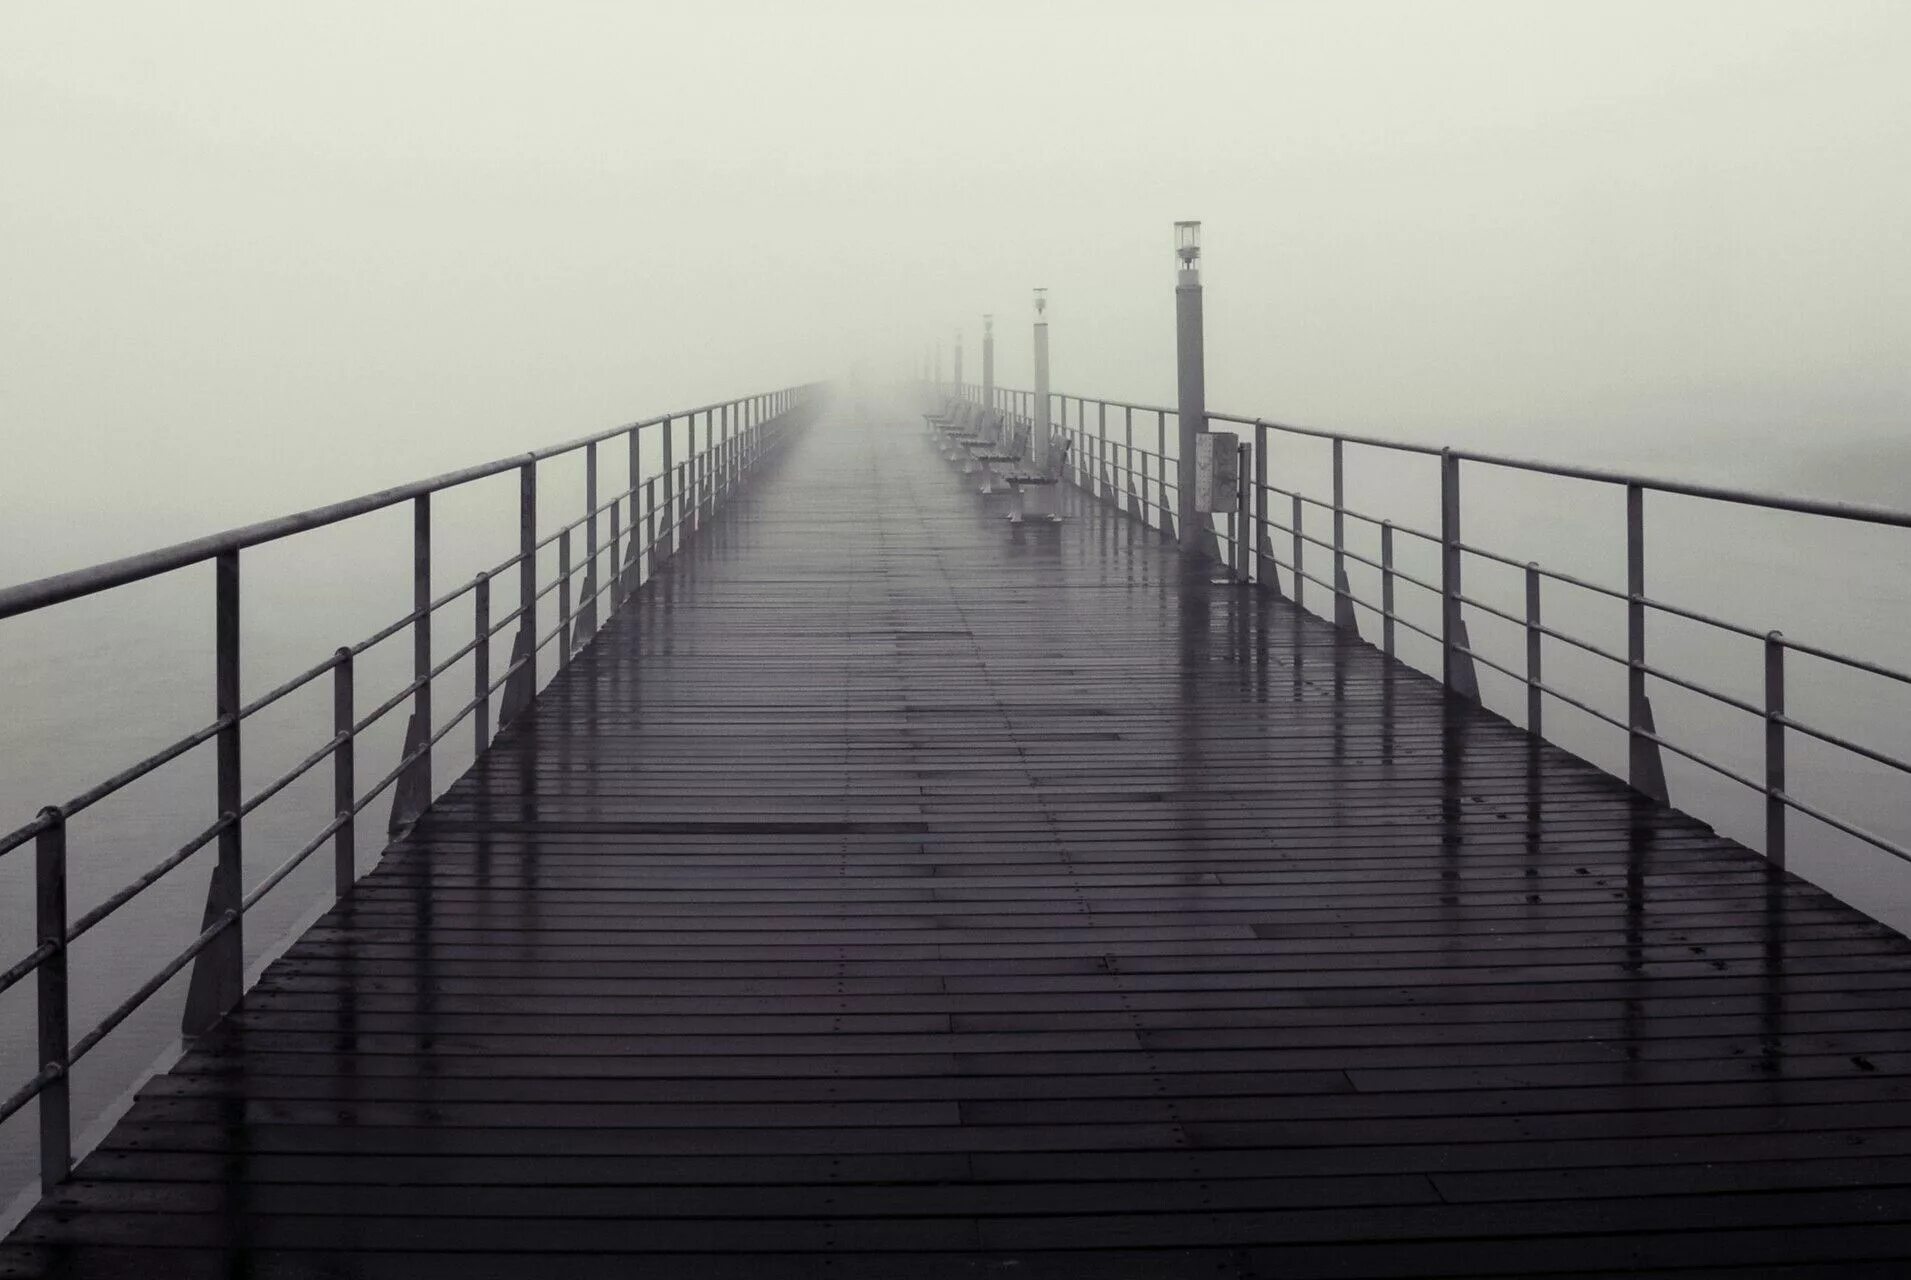 Никуда форум. Пирс в тумане. Пристань в тумане. Мост в тумане. Причал в тумане.